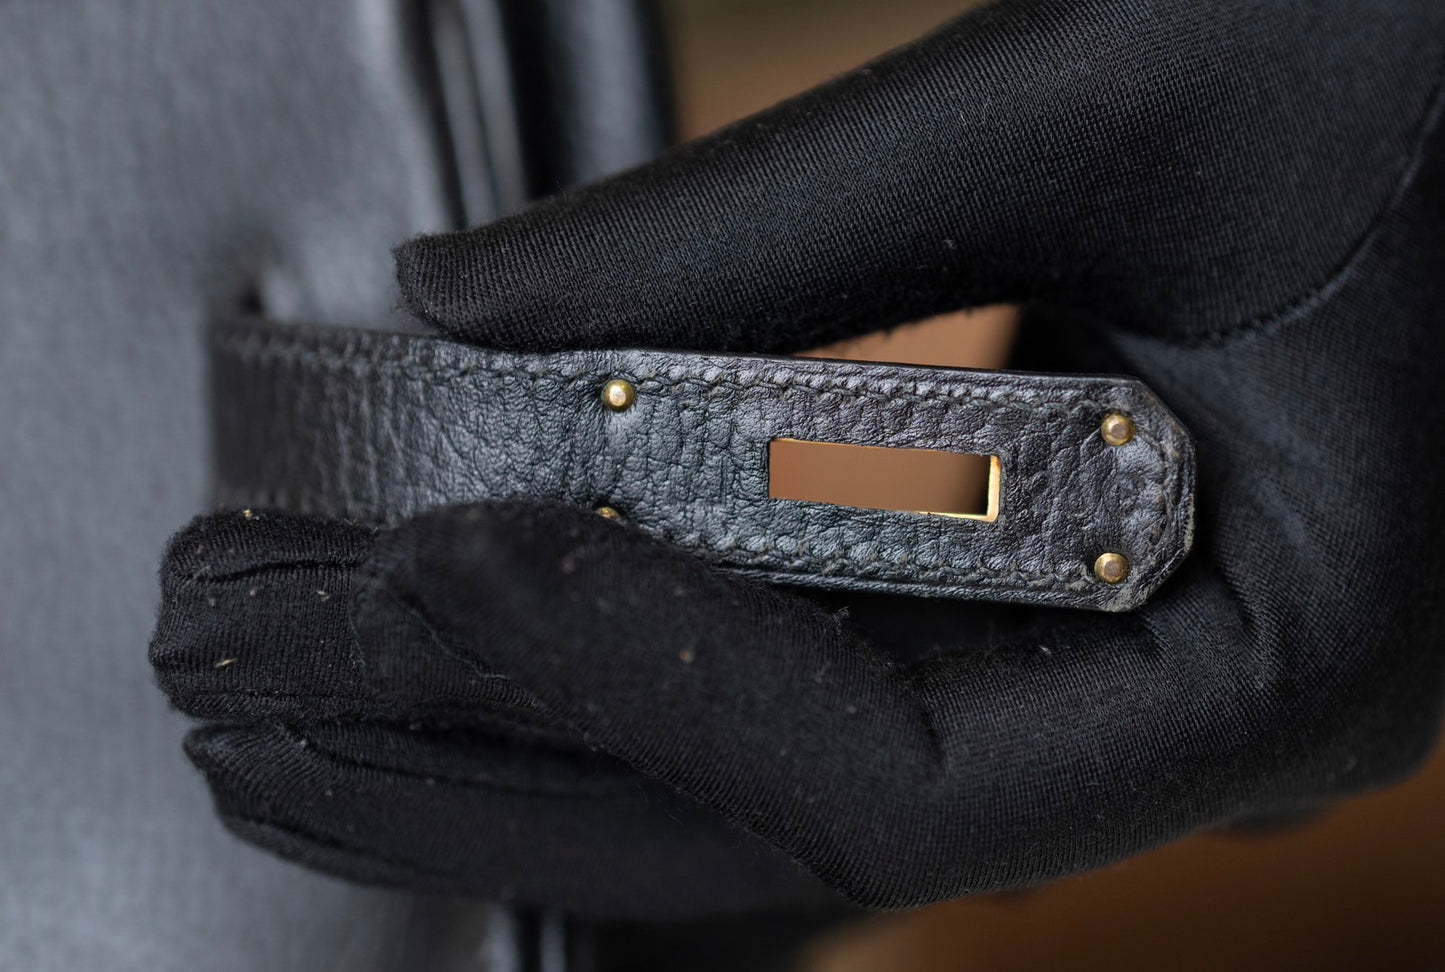 Pre-loved Hermès Birkin 35 Ardennes Handbag Black